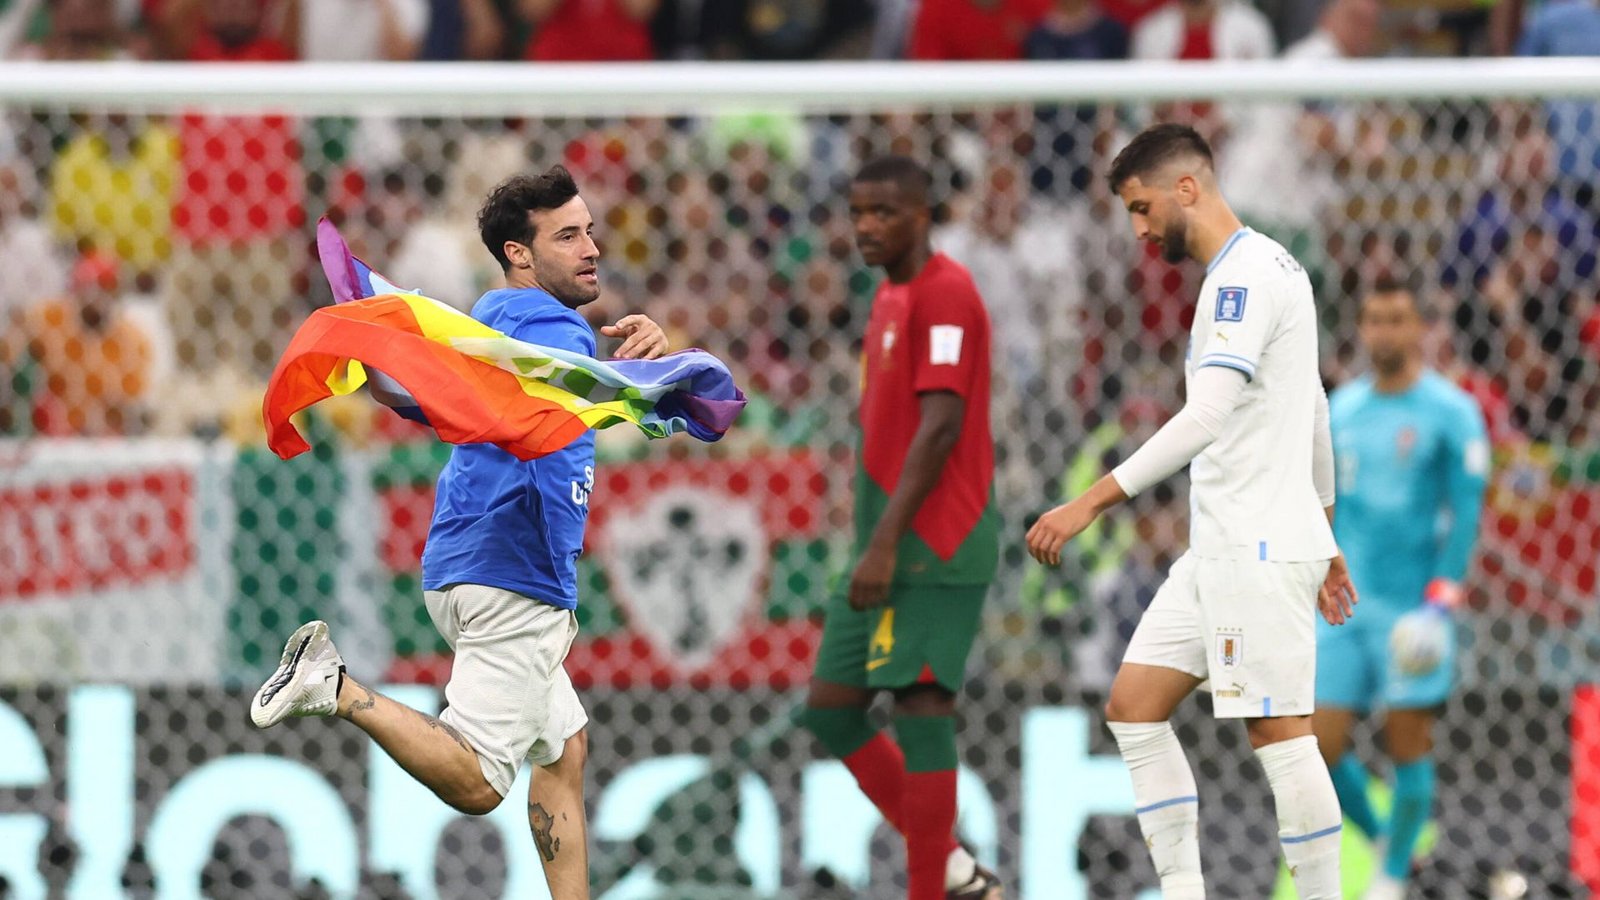 Während des Spiels zwischen Portugal und Uruguay sorgte ein Flitzer mit einer Regenbogenfahne für eine Spielunterbrechung. Auf den Fernsehbildern war er nicht zu sehen, da die Regie weg blendete.Foto: IMAGO/Sportimage/IMAGO/David Klein